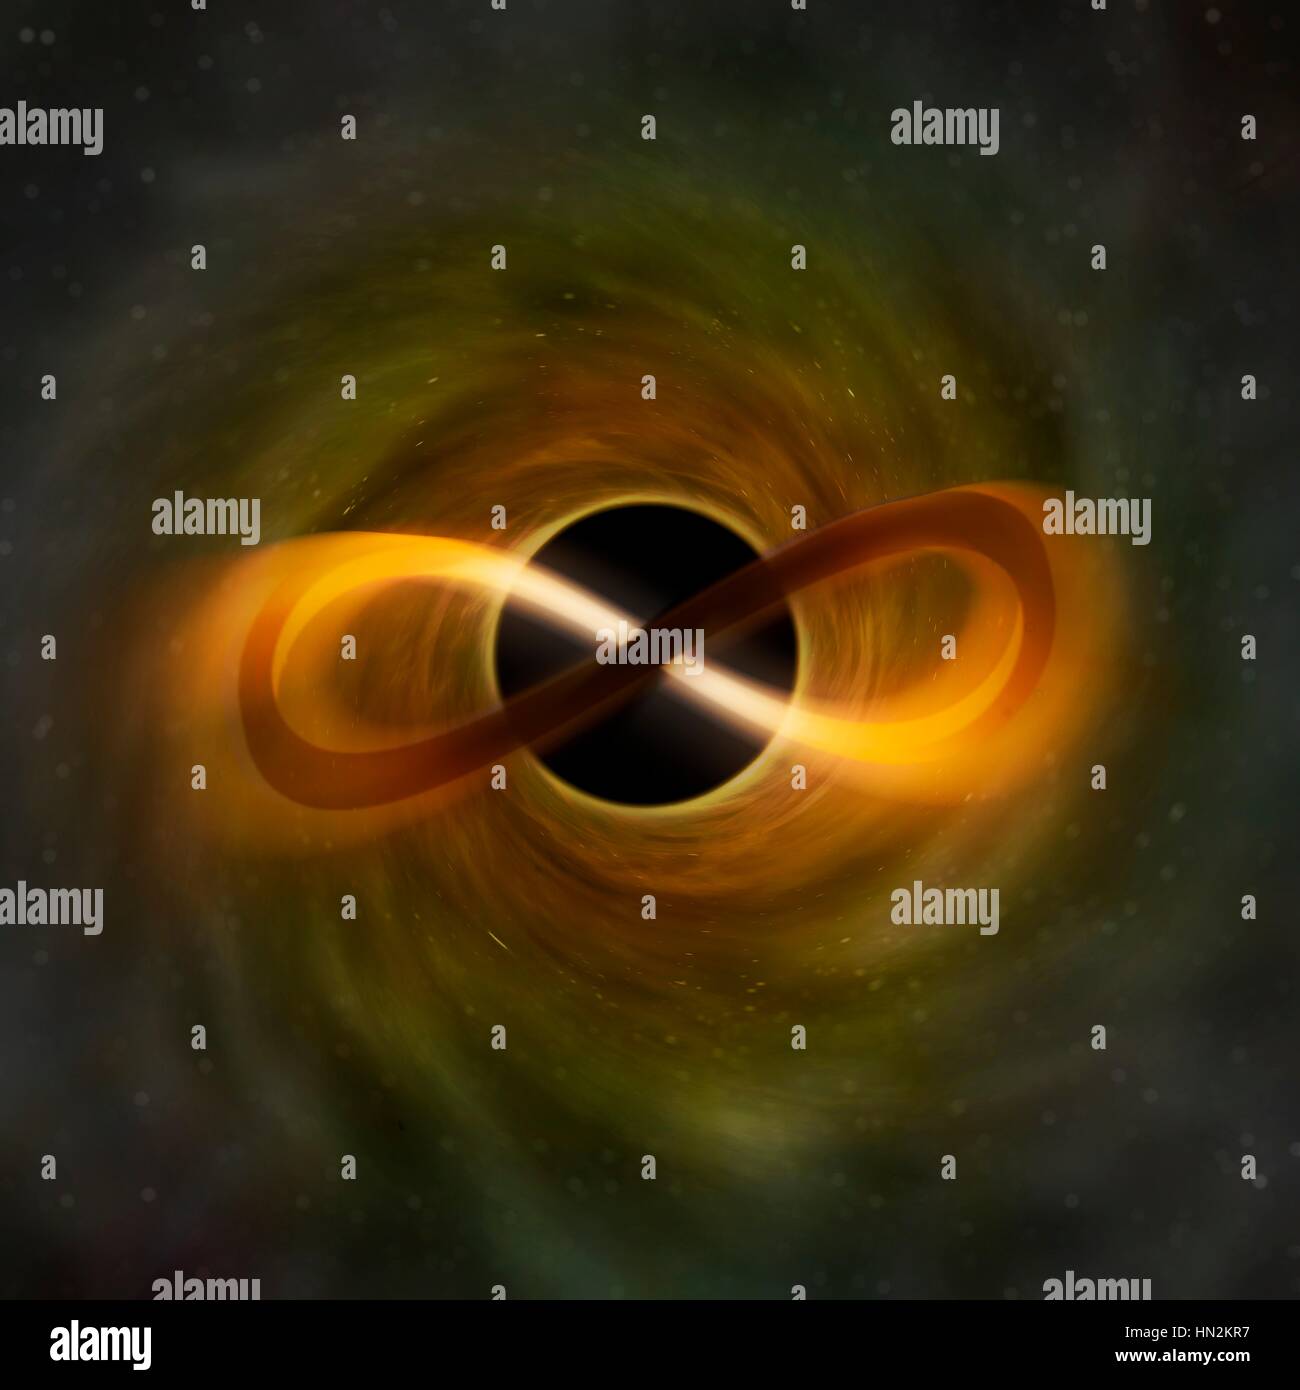 Unendliche Schleife vor einer kosmischen Hintergrund repräsentieren ein schwarzes Loch zu sehen. Dieses Symbol steht für das mathematische Konzept eines unendlichen, unbegrenzt ist, oder unbegrenzte Menge. Stockfoto